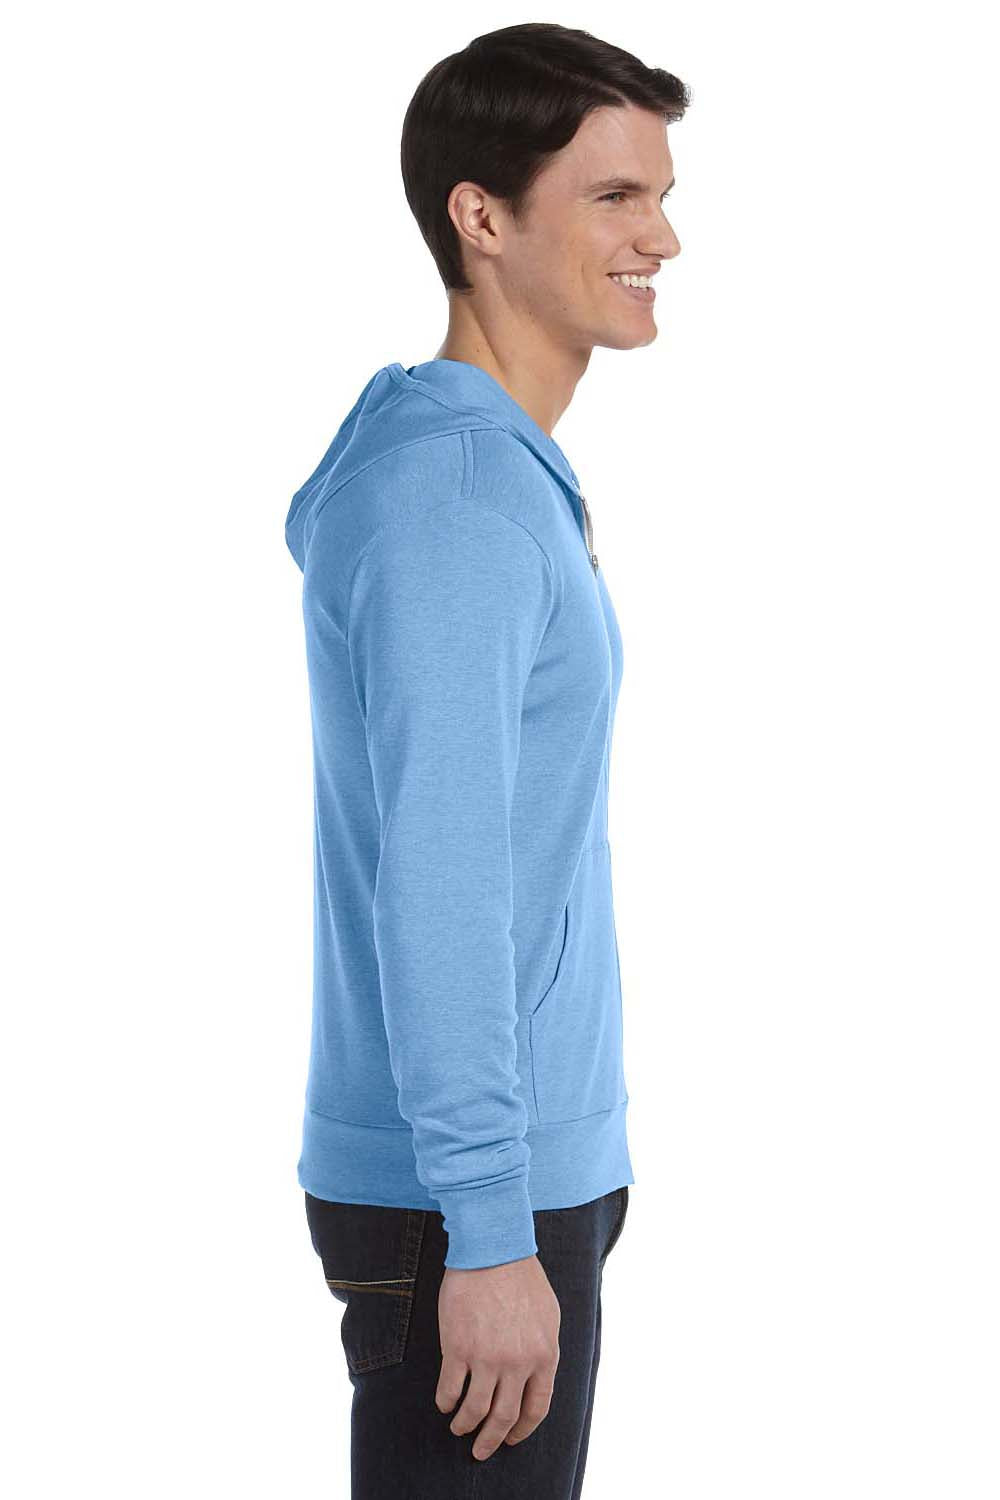 Bella + Canvas 3939 Mens Full Zip Long Sleeve Hooded T-Shirt Hoodie Athletic Blue Side